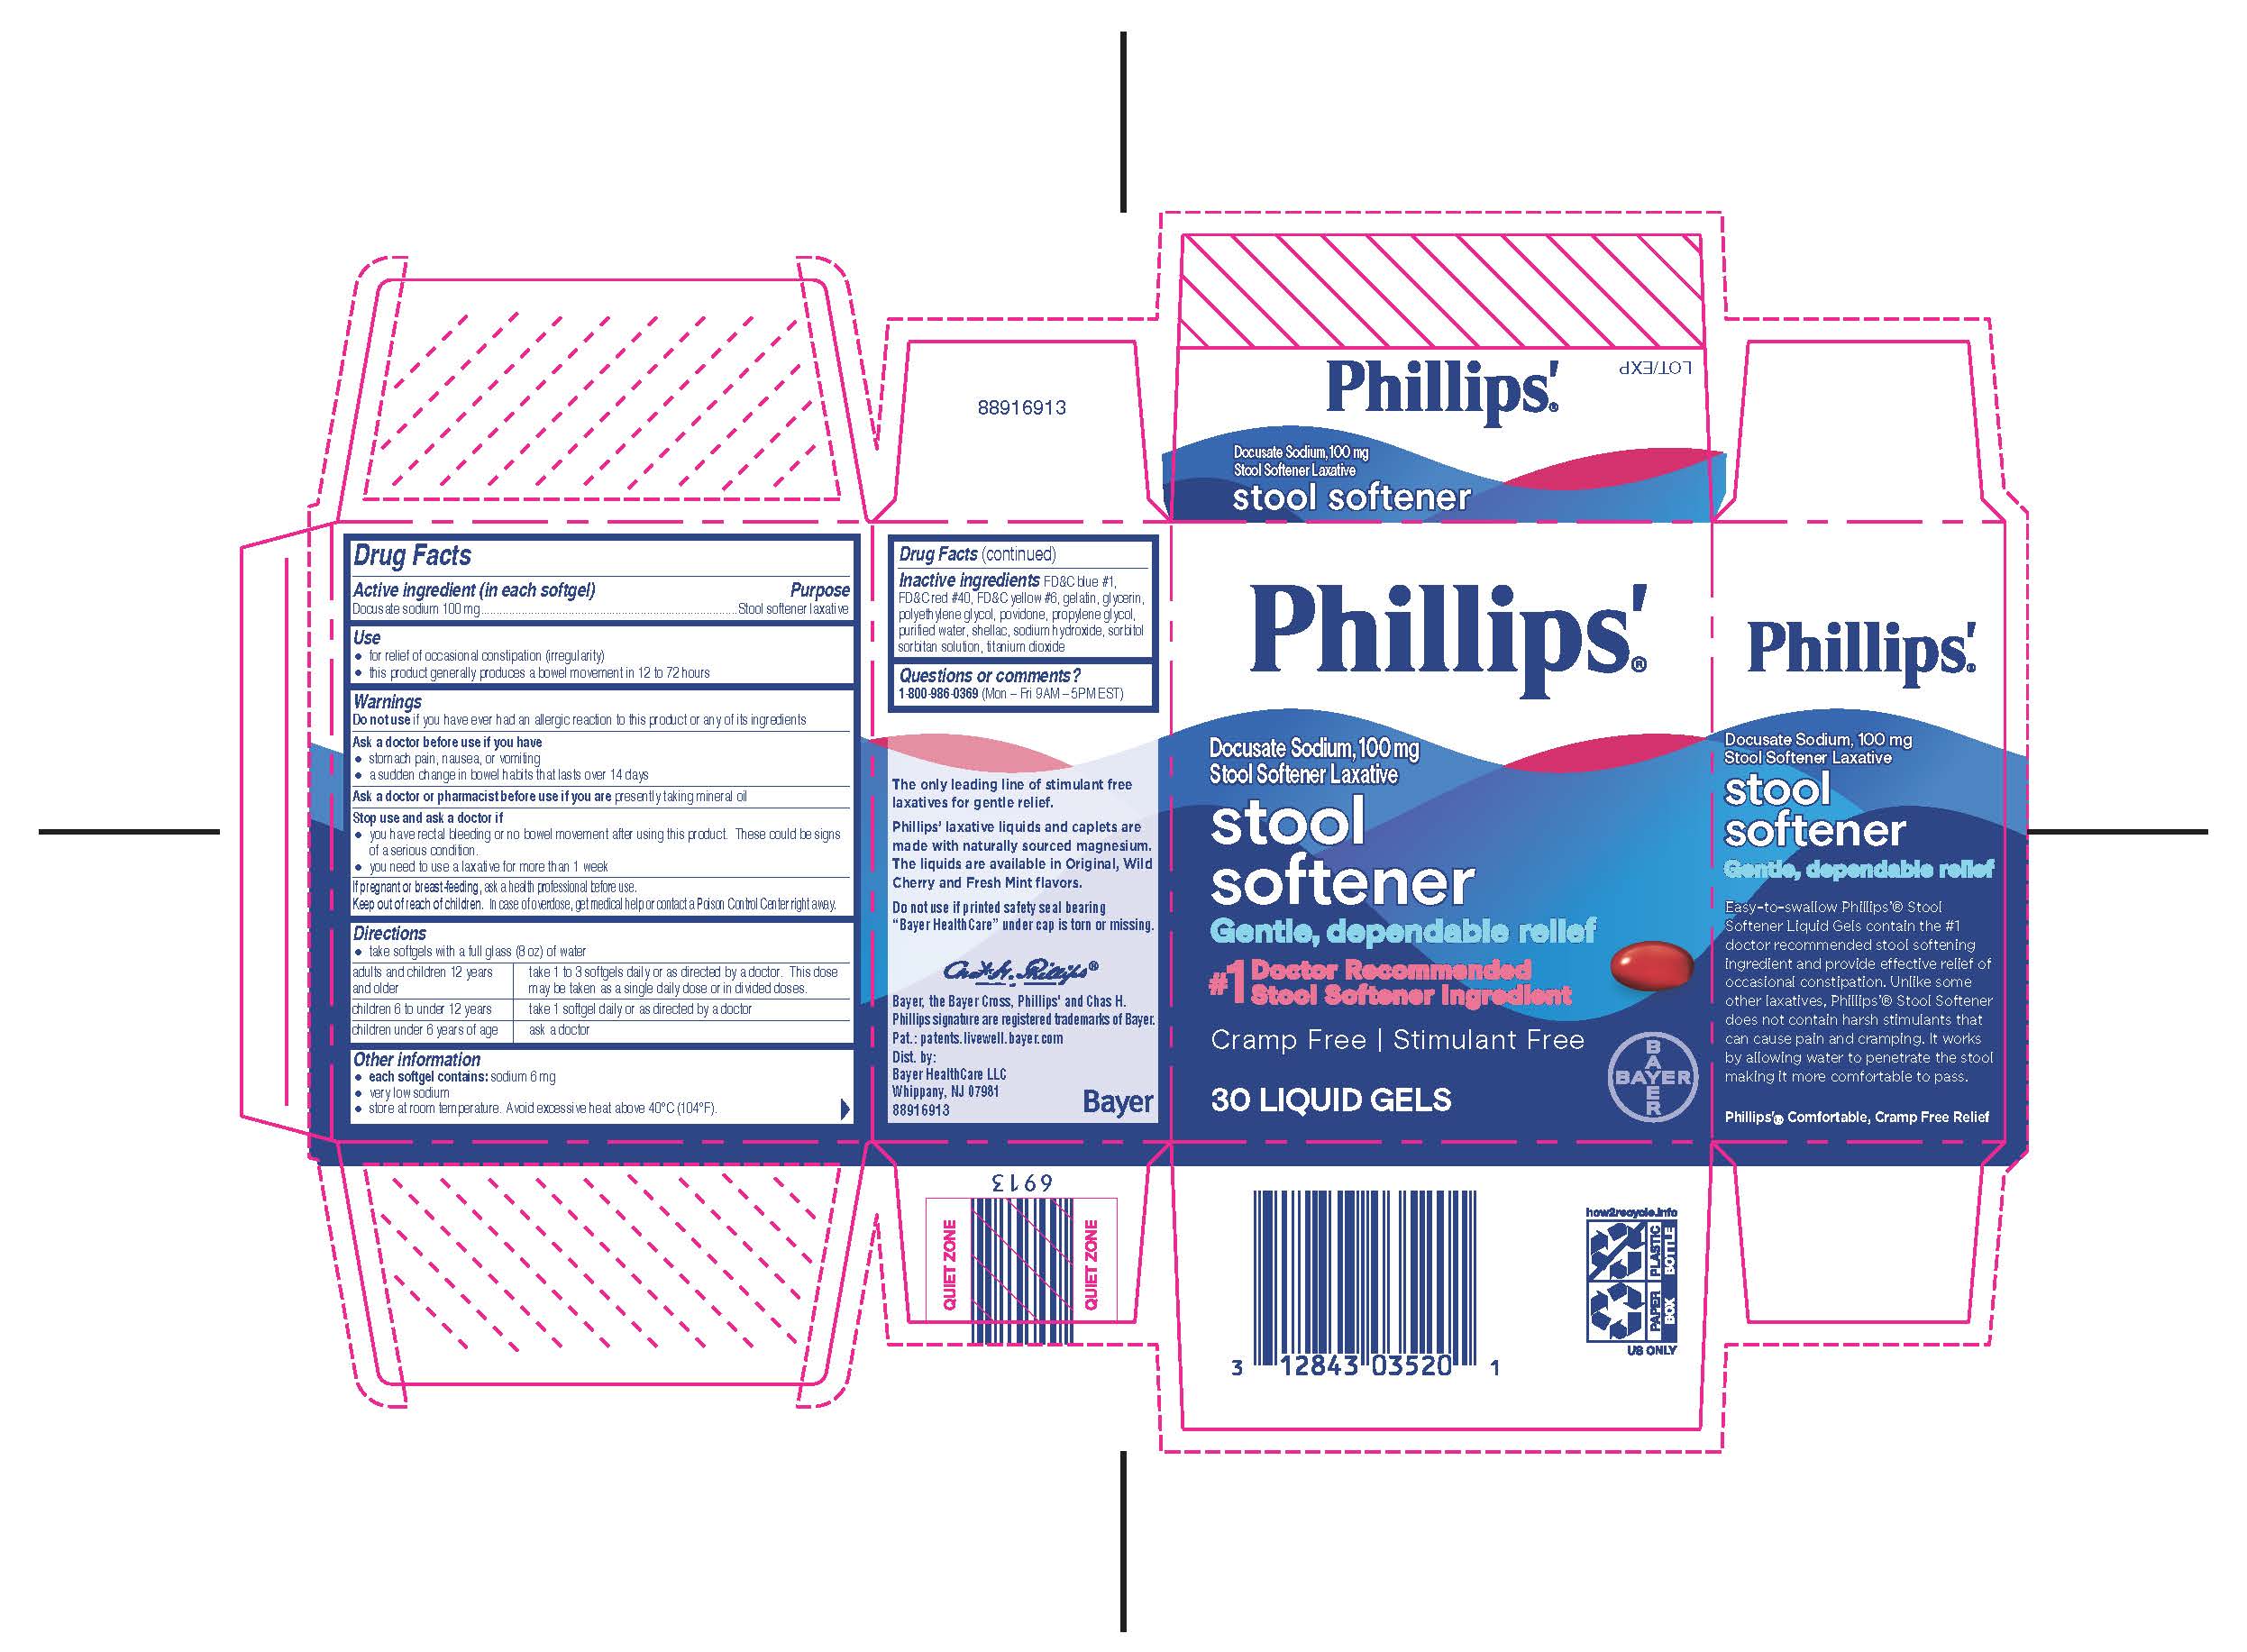 Phillips Milk of Magnesia Liquid - 769 ml